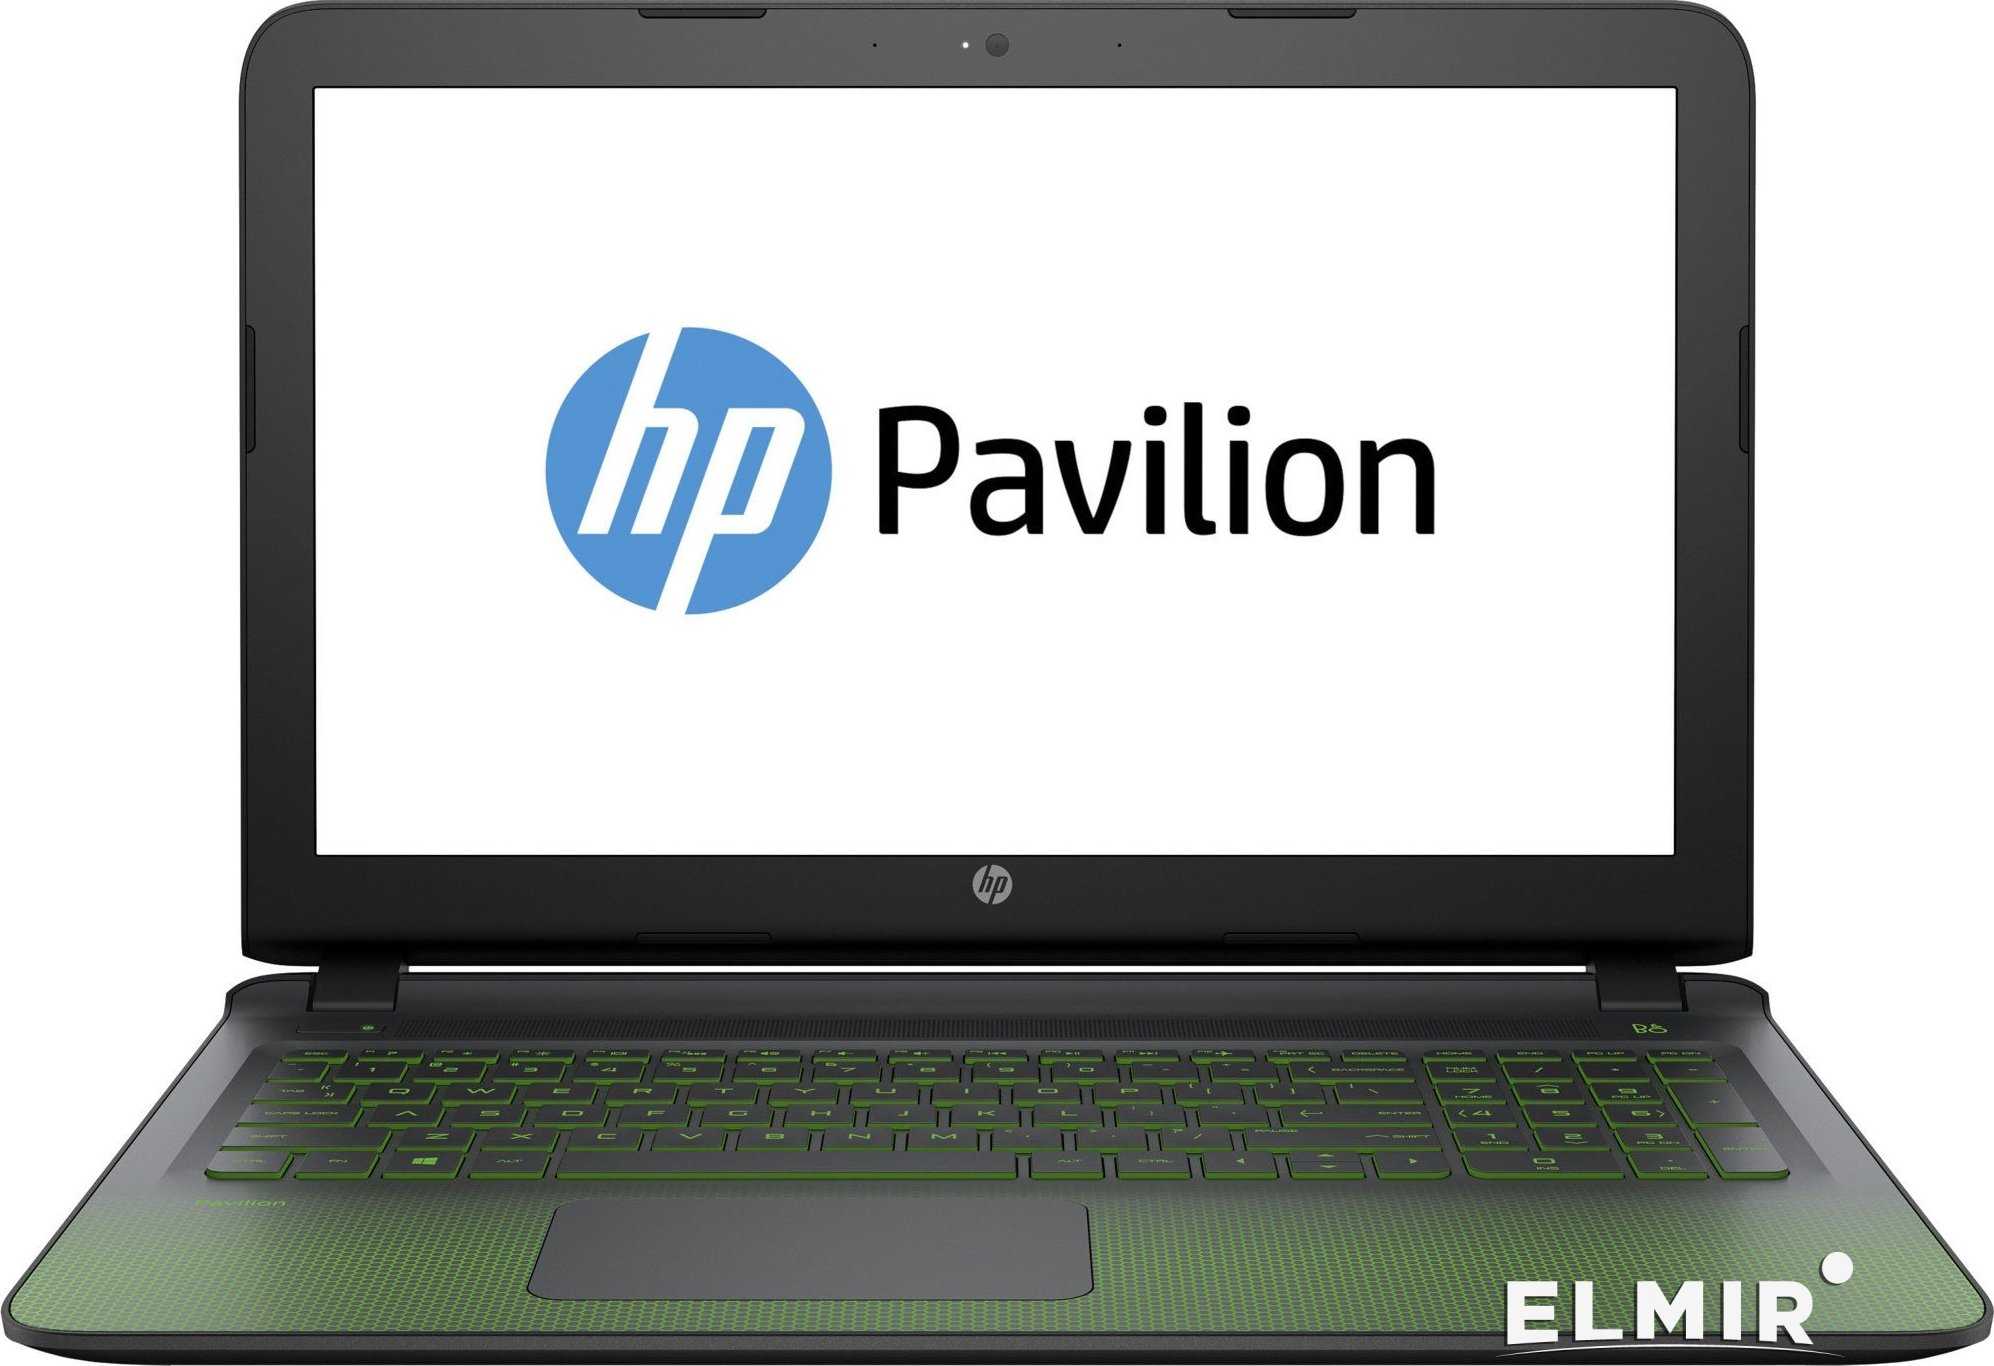 Ноутбук HP Pavilion Gaming 15-ak199ur (P3M10EA) Black - подробные характеристики обзоры видео фото Цены в интернет-магазинах где можно купить ноутбук HP Pavilion Gaming 15-ak199ur (P3M10EA) Black